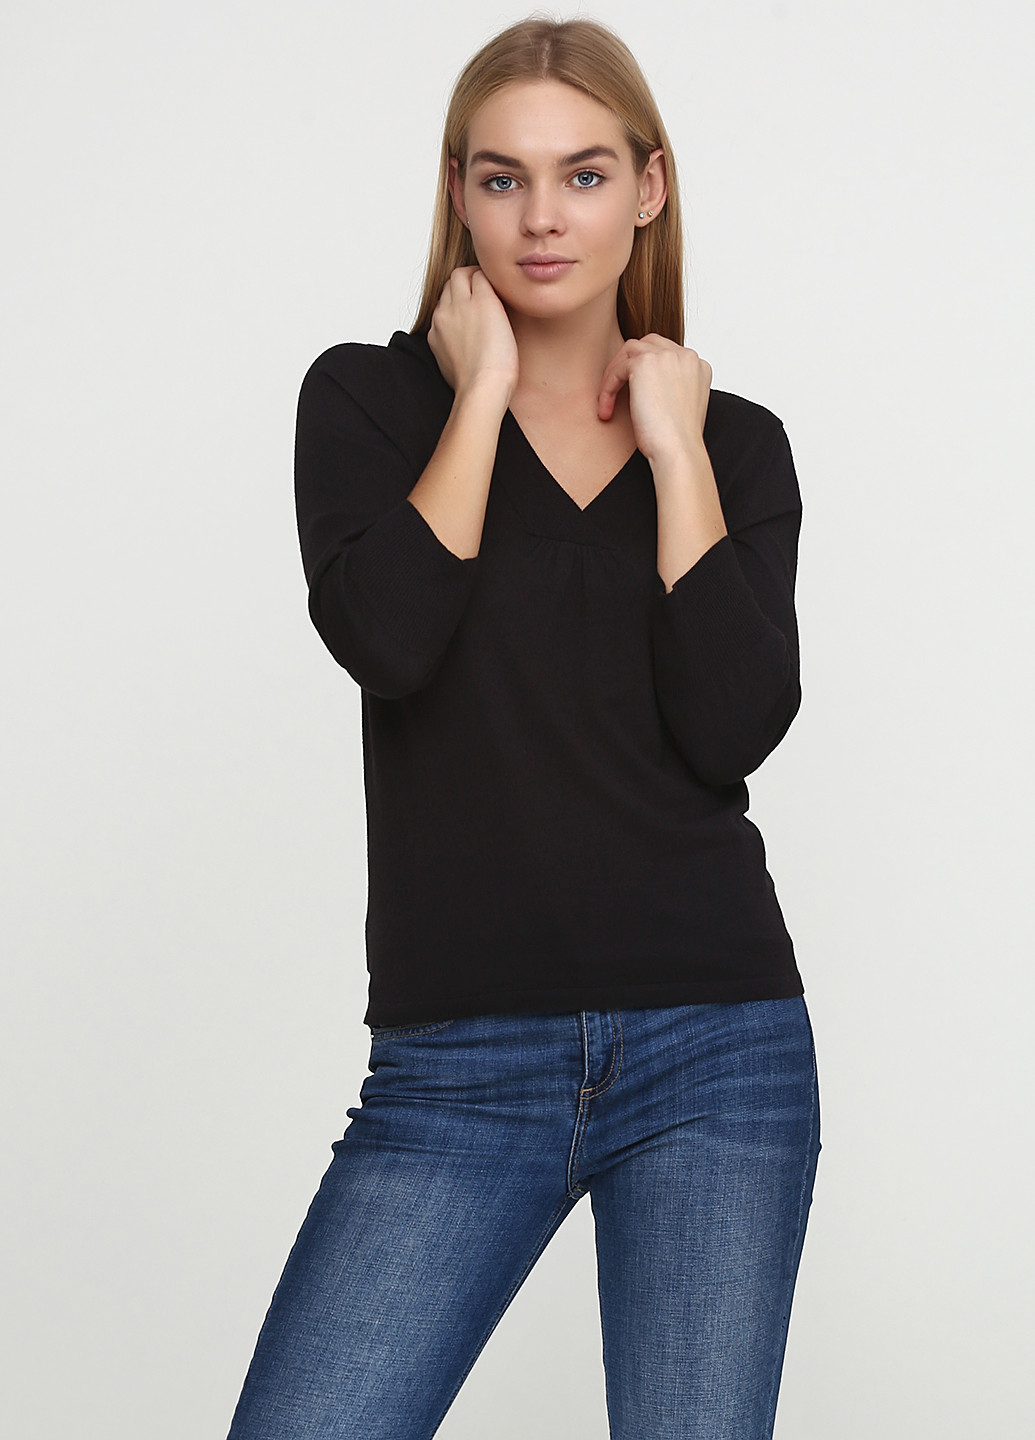 Черный демисезонный пуловер пуловер Covington